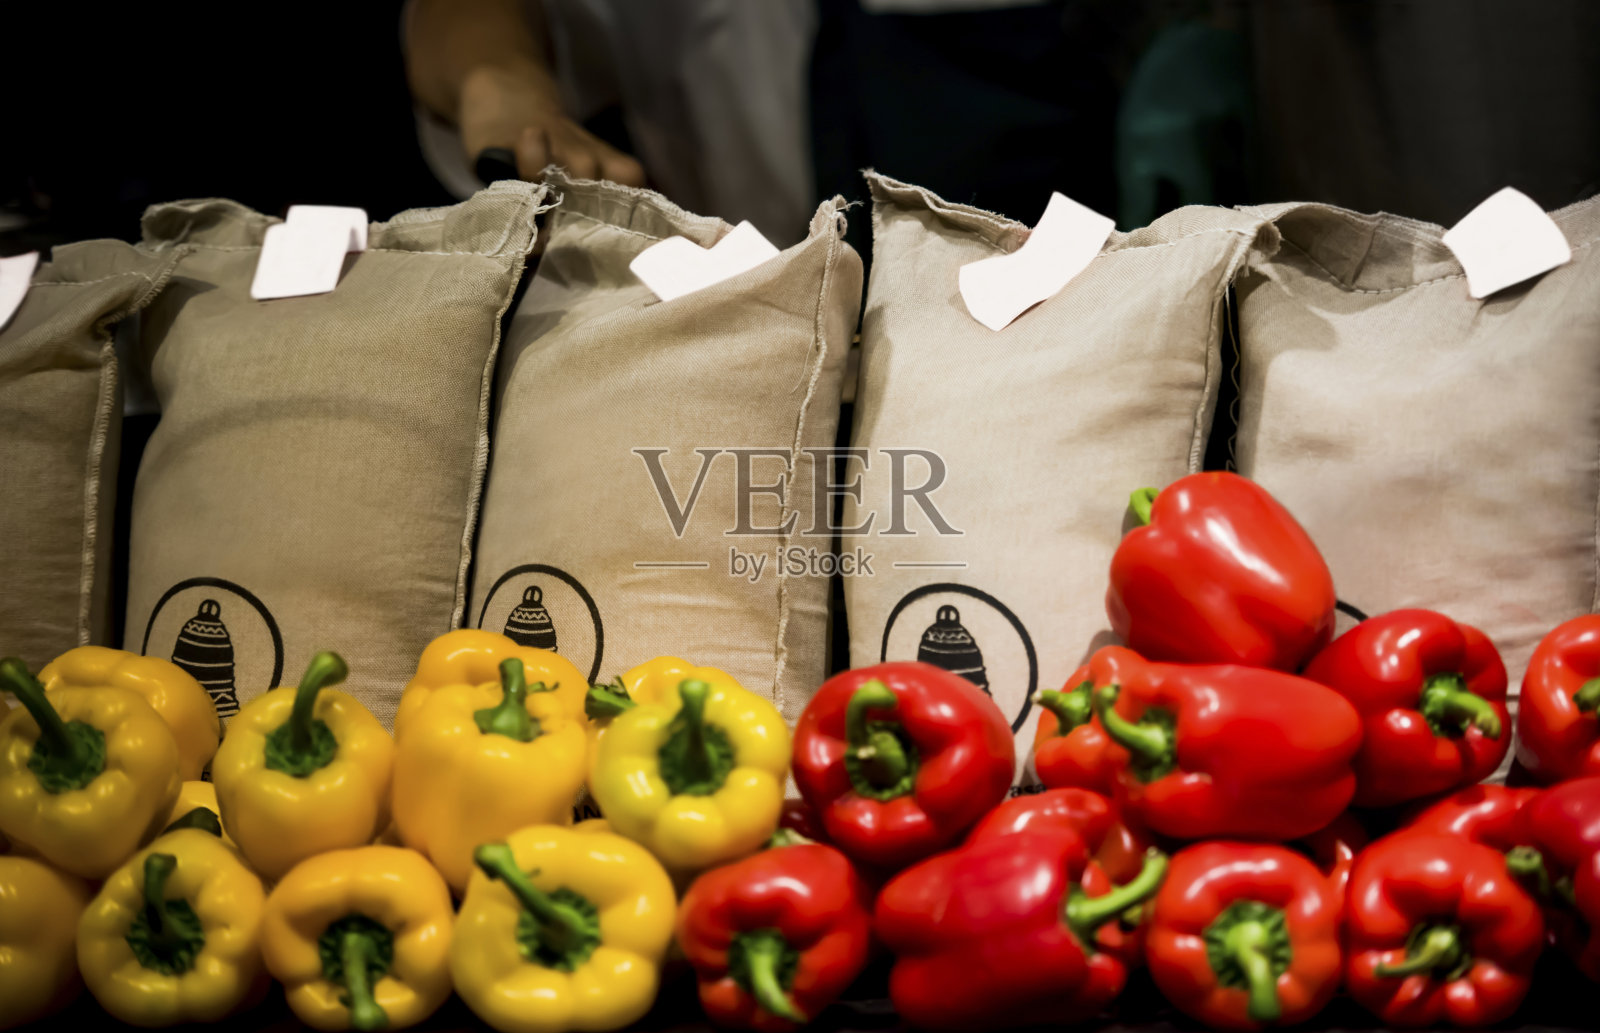 辣椒和蔬菜袋照片摄影图片